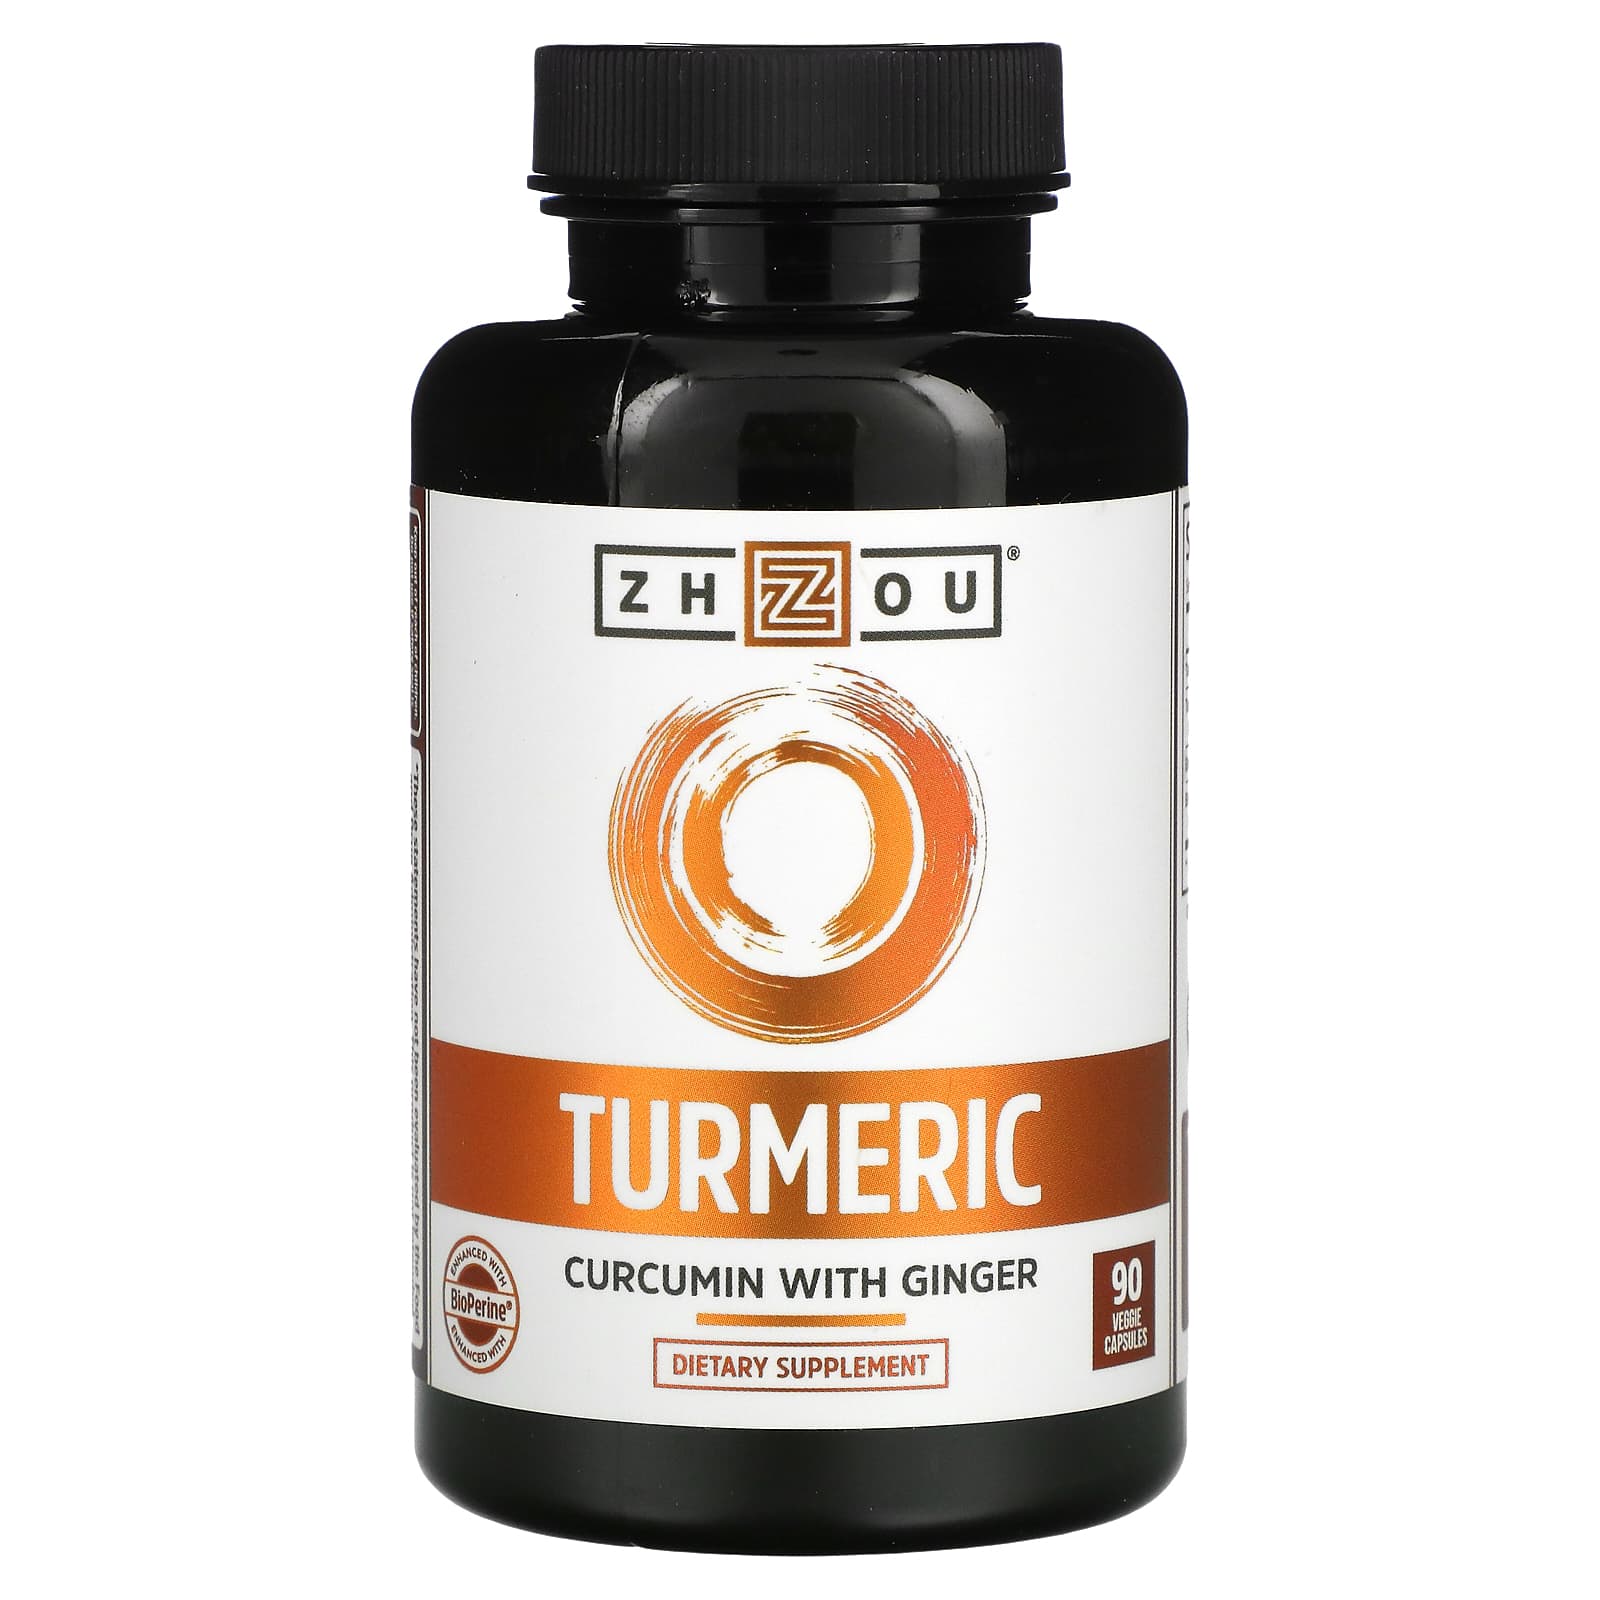 Turmeric/curcumin